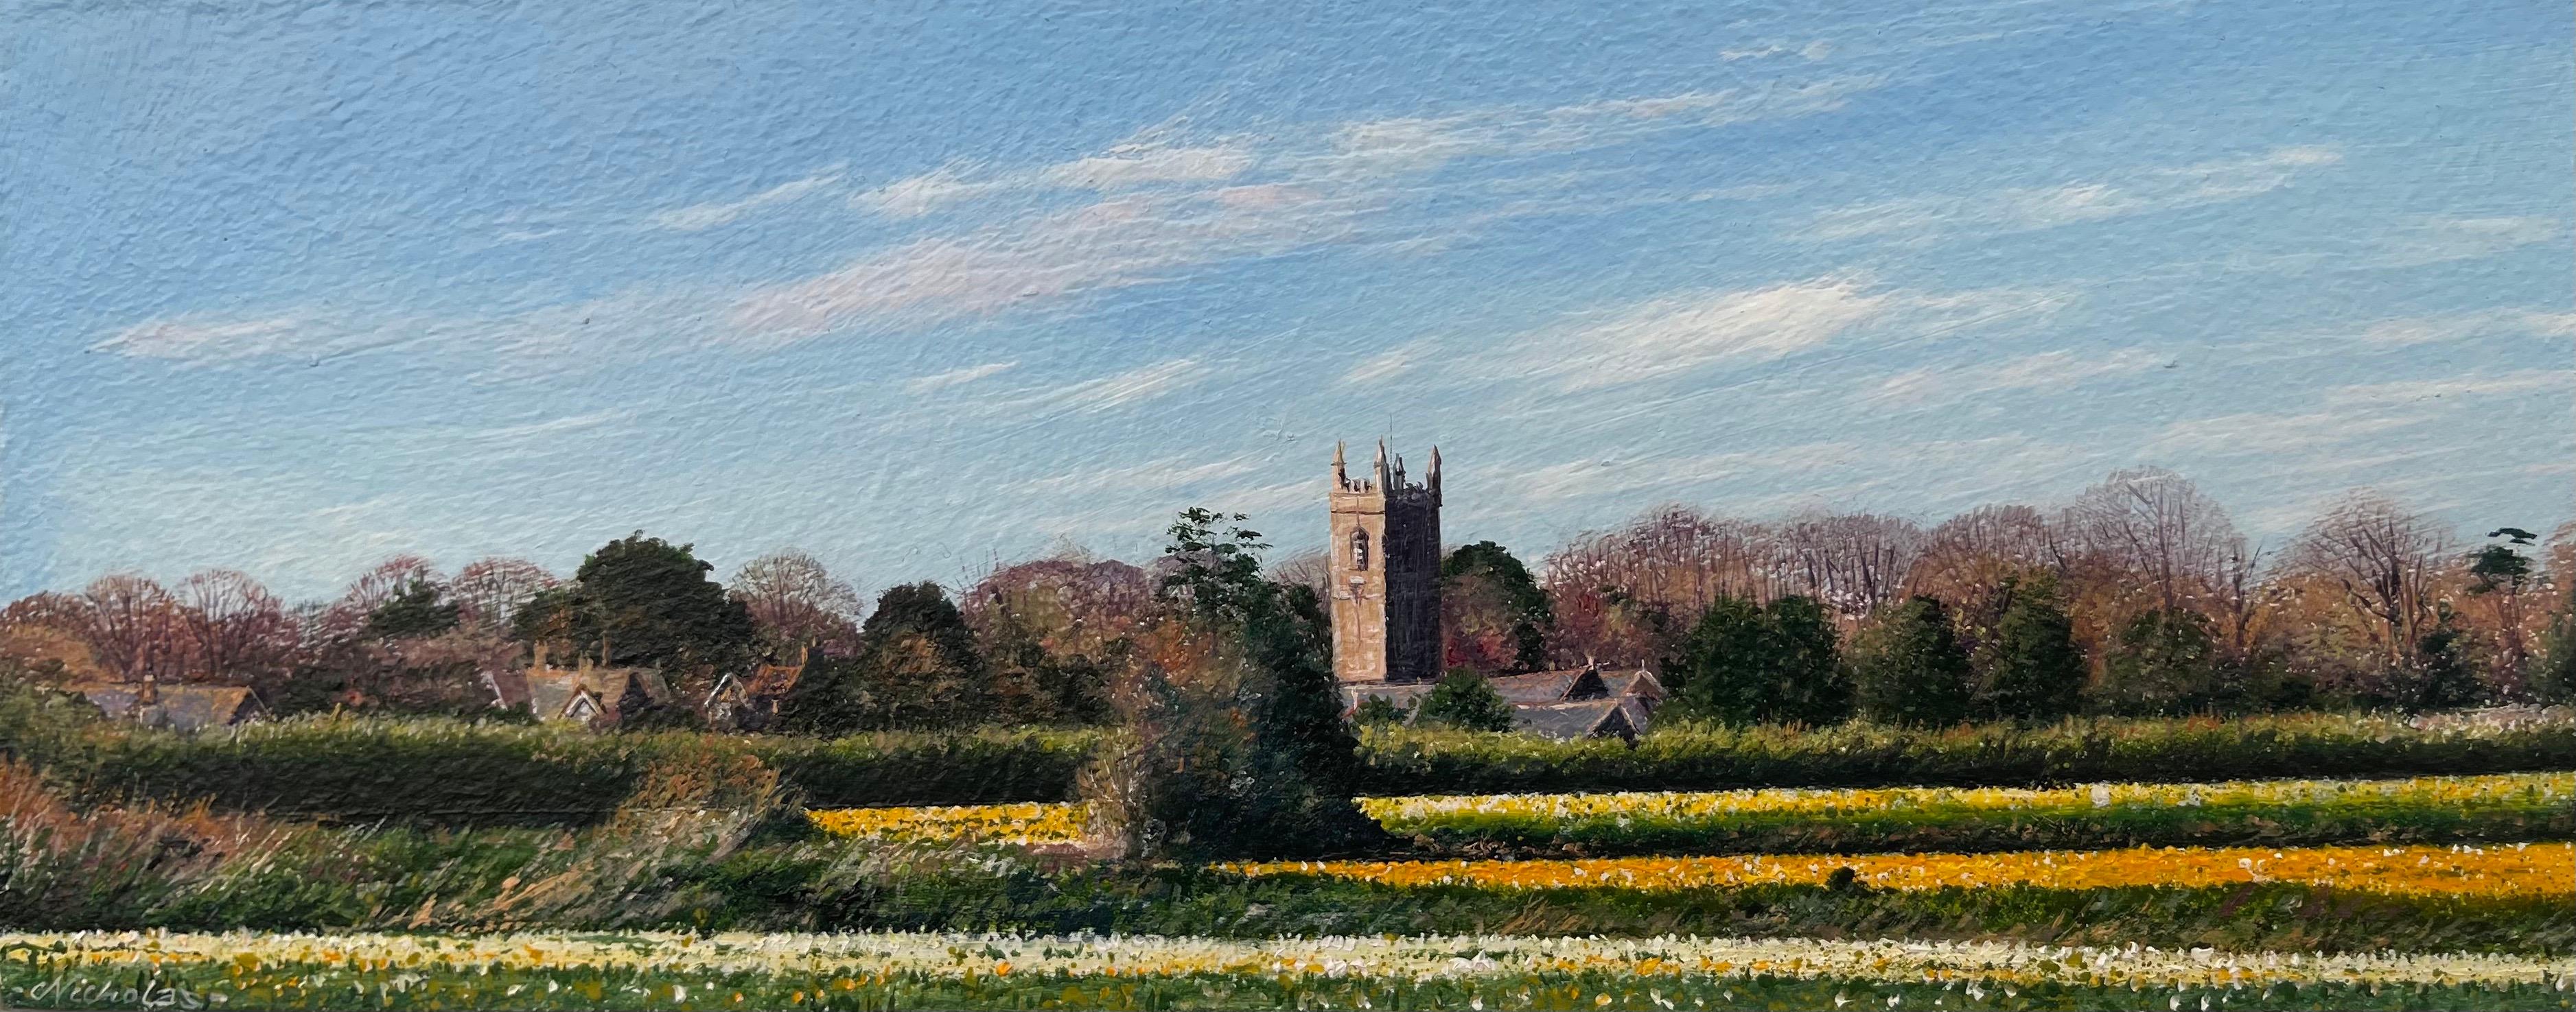 Daffodil Fields Englische Landschaftsmalerei von Nicholas Smith, einem zeitgenössischen fotorealistischen Künstler. 

Kunst misst 8,5 x 3,5 Zoll
Rahmen misst 11,5 x 6,5 Zoll  

Nicholas Smith wurde im Dezember 1960 als Sohn eines der führenden